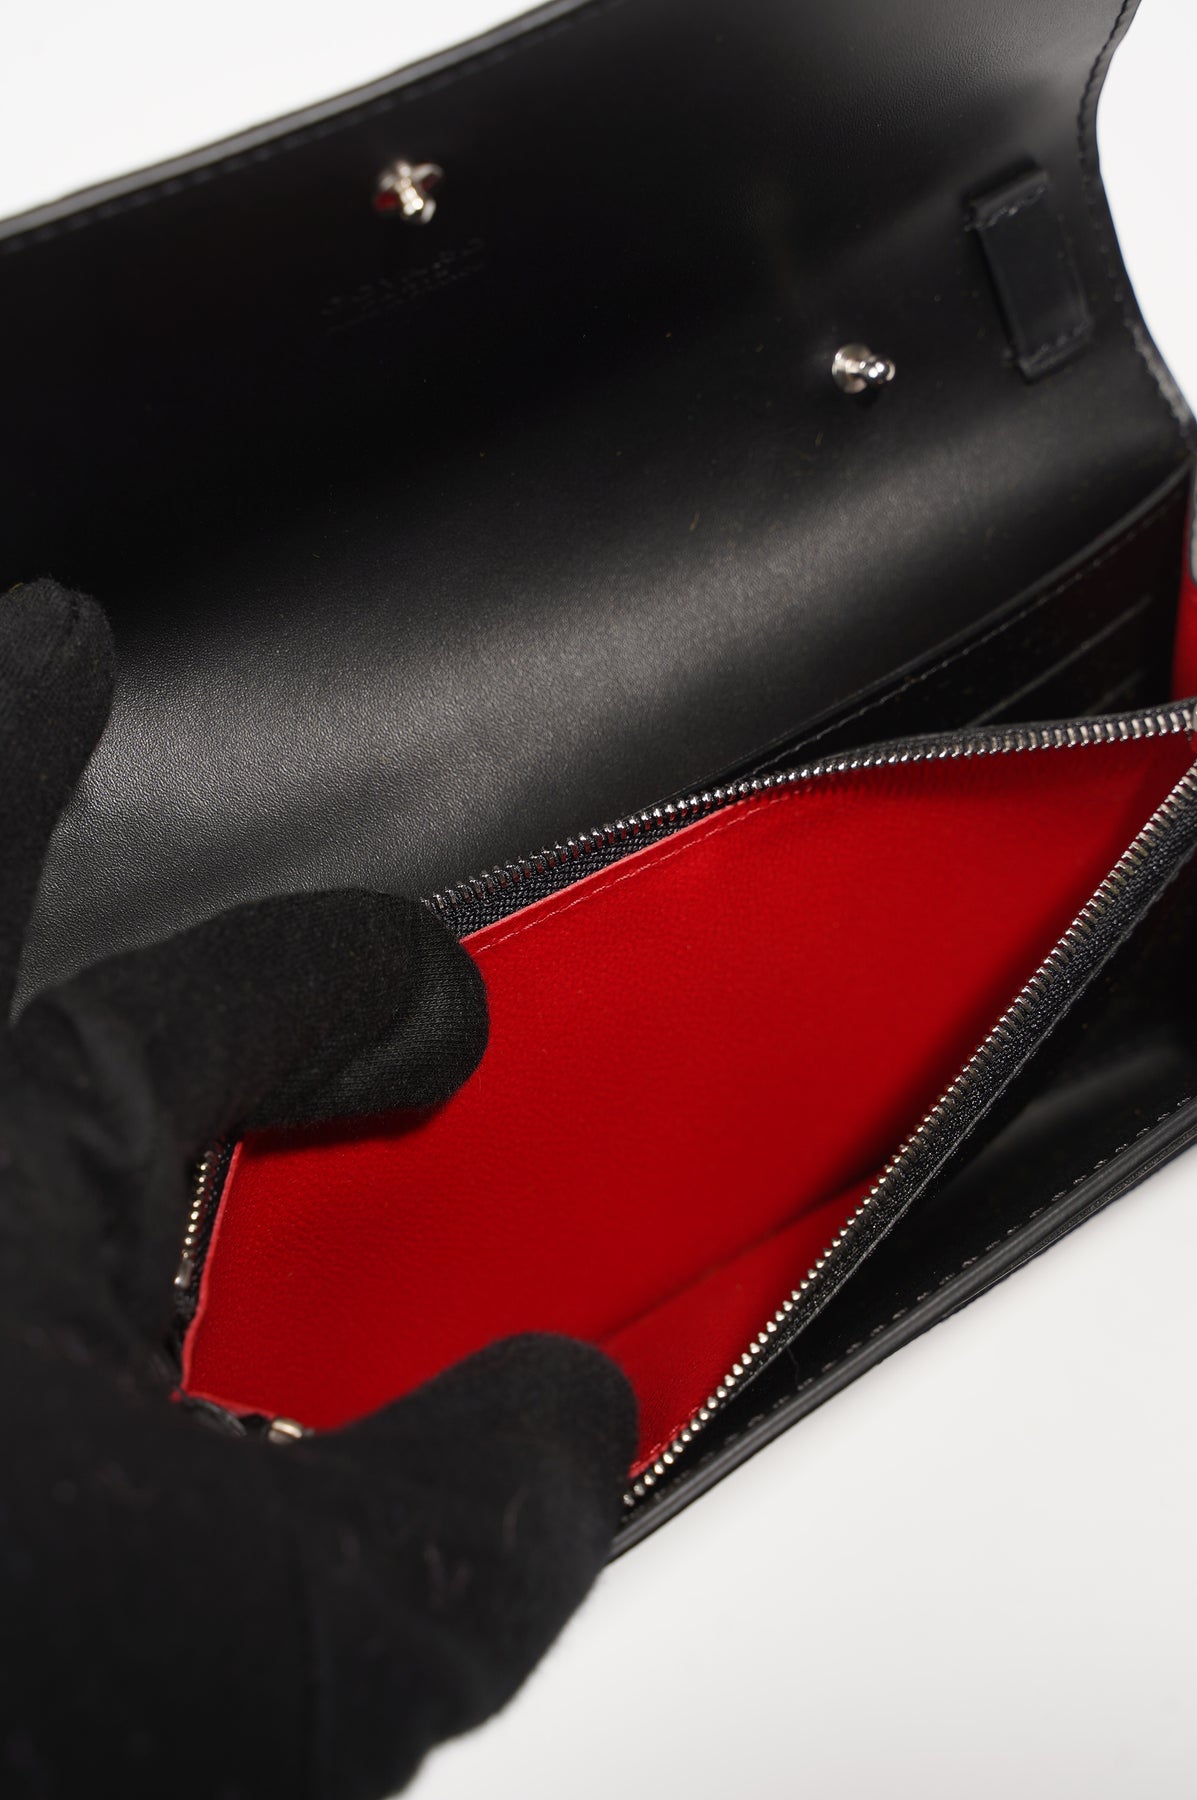 Goyard Goyardine Black Varenne Continental Wallet Bag Silver Hardware